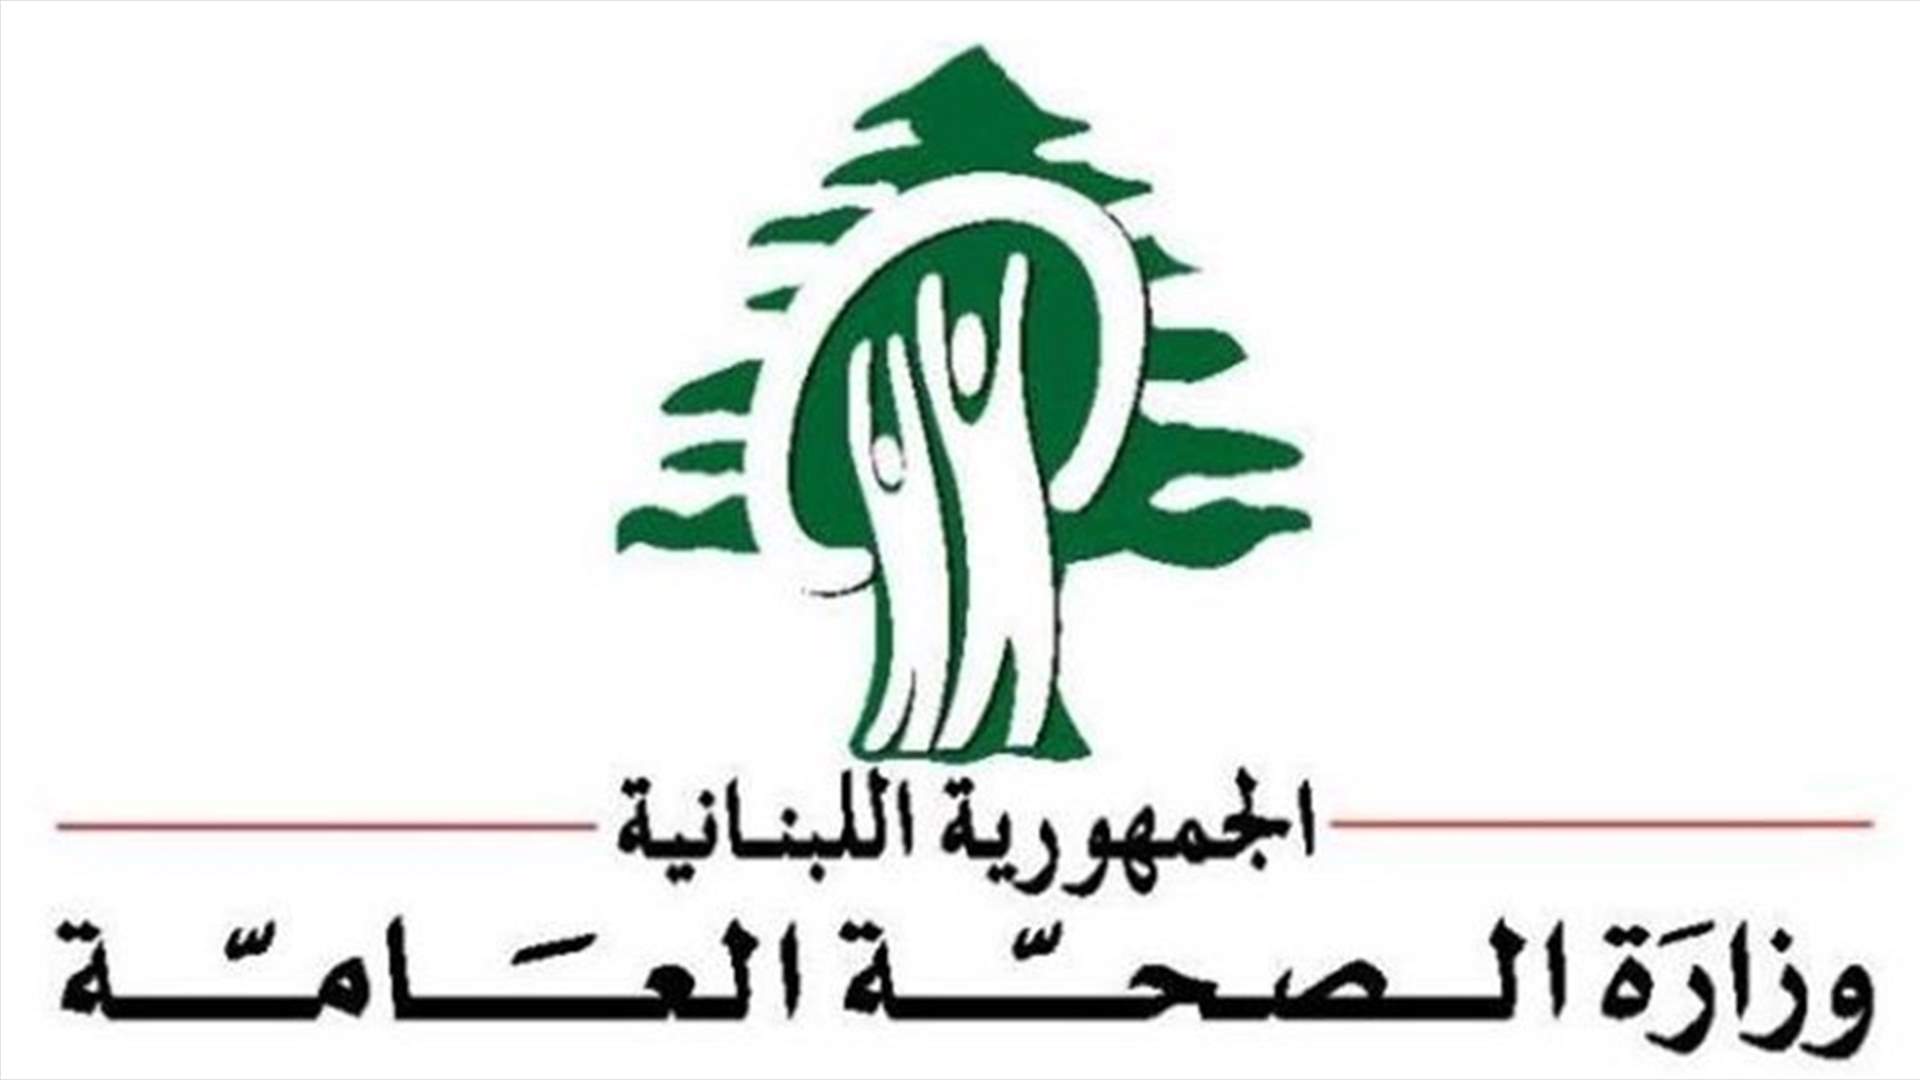 وزارة الصحة: طرح وسائل التواصل الاجتماعي حالات وفيات بشكل مغلوط يشوه صورة لبنان الصحية والانسانية